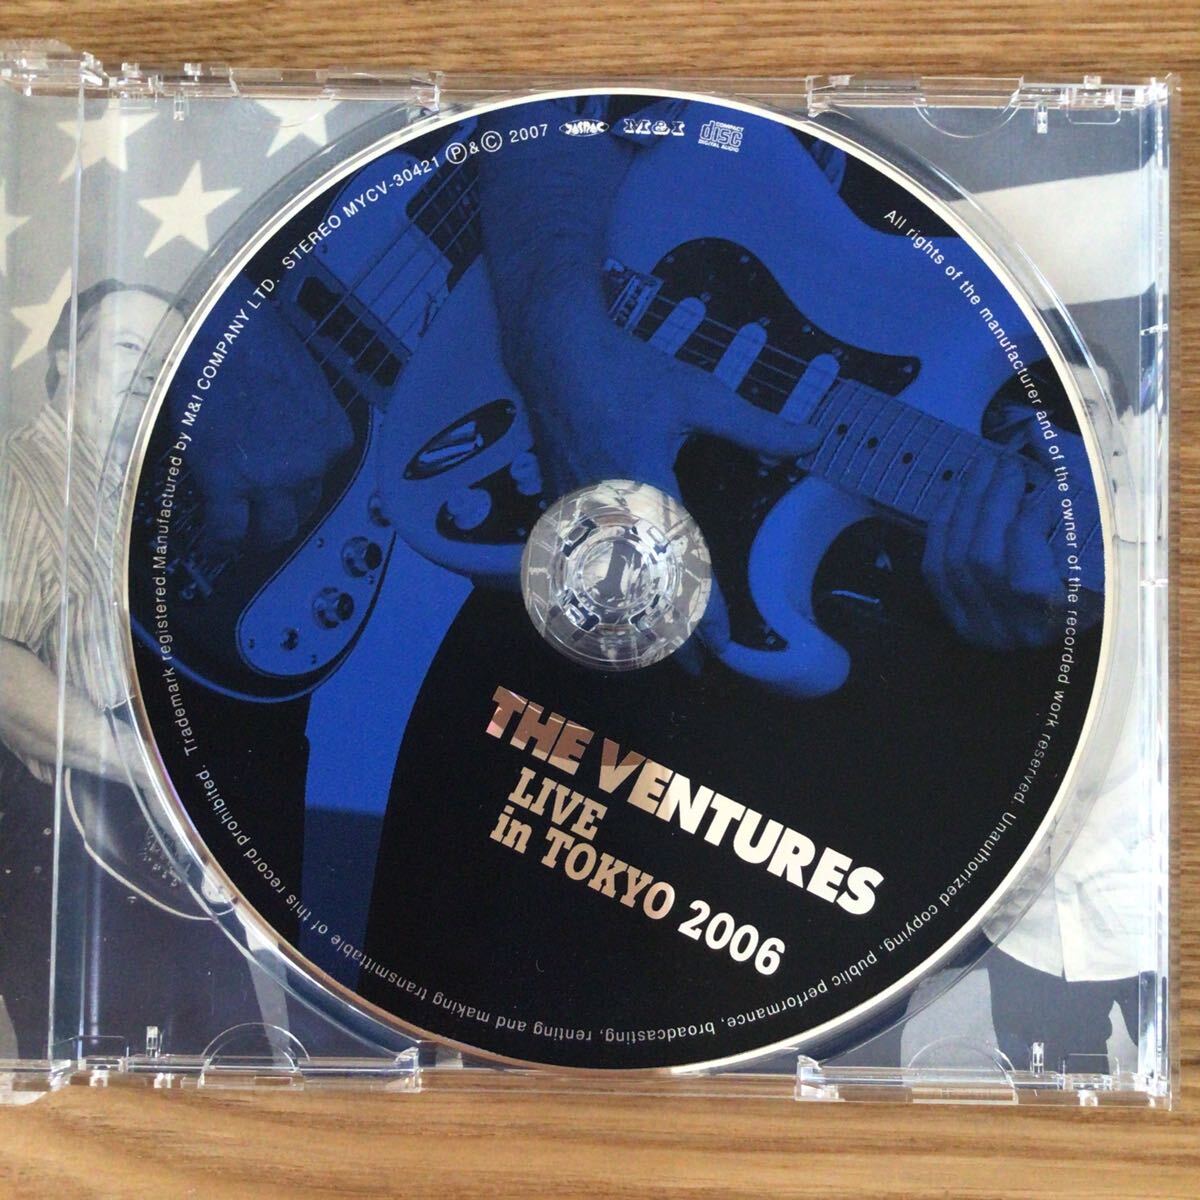 【CD】ザ・ベンチャーズ THE VENTURES / ライブ・イン・トーキョー2006の画像5